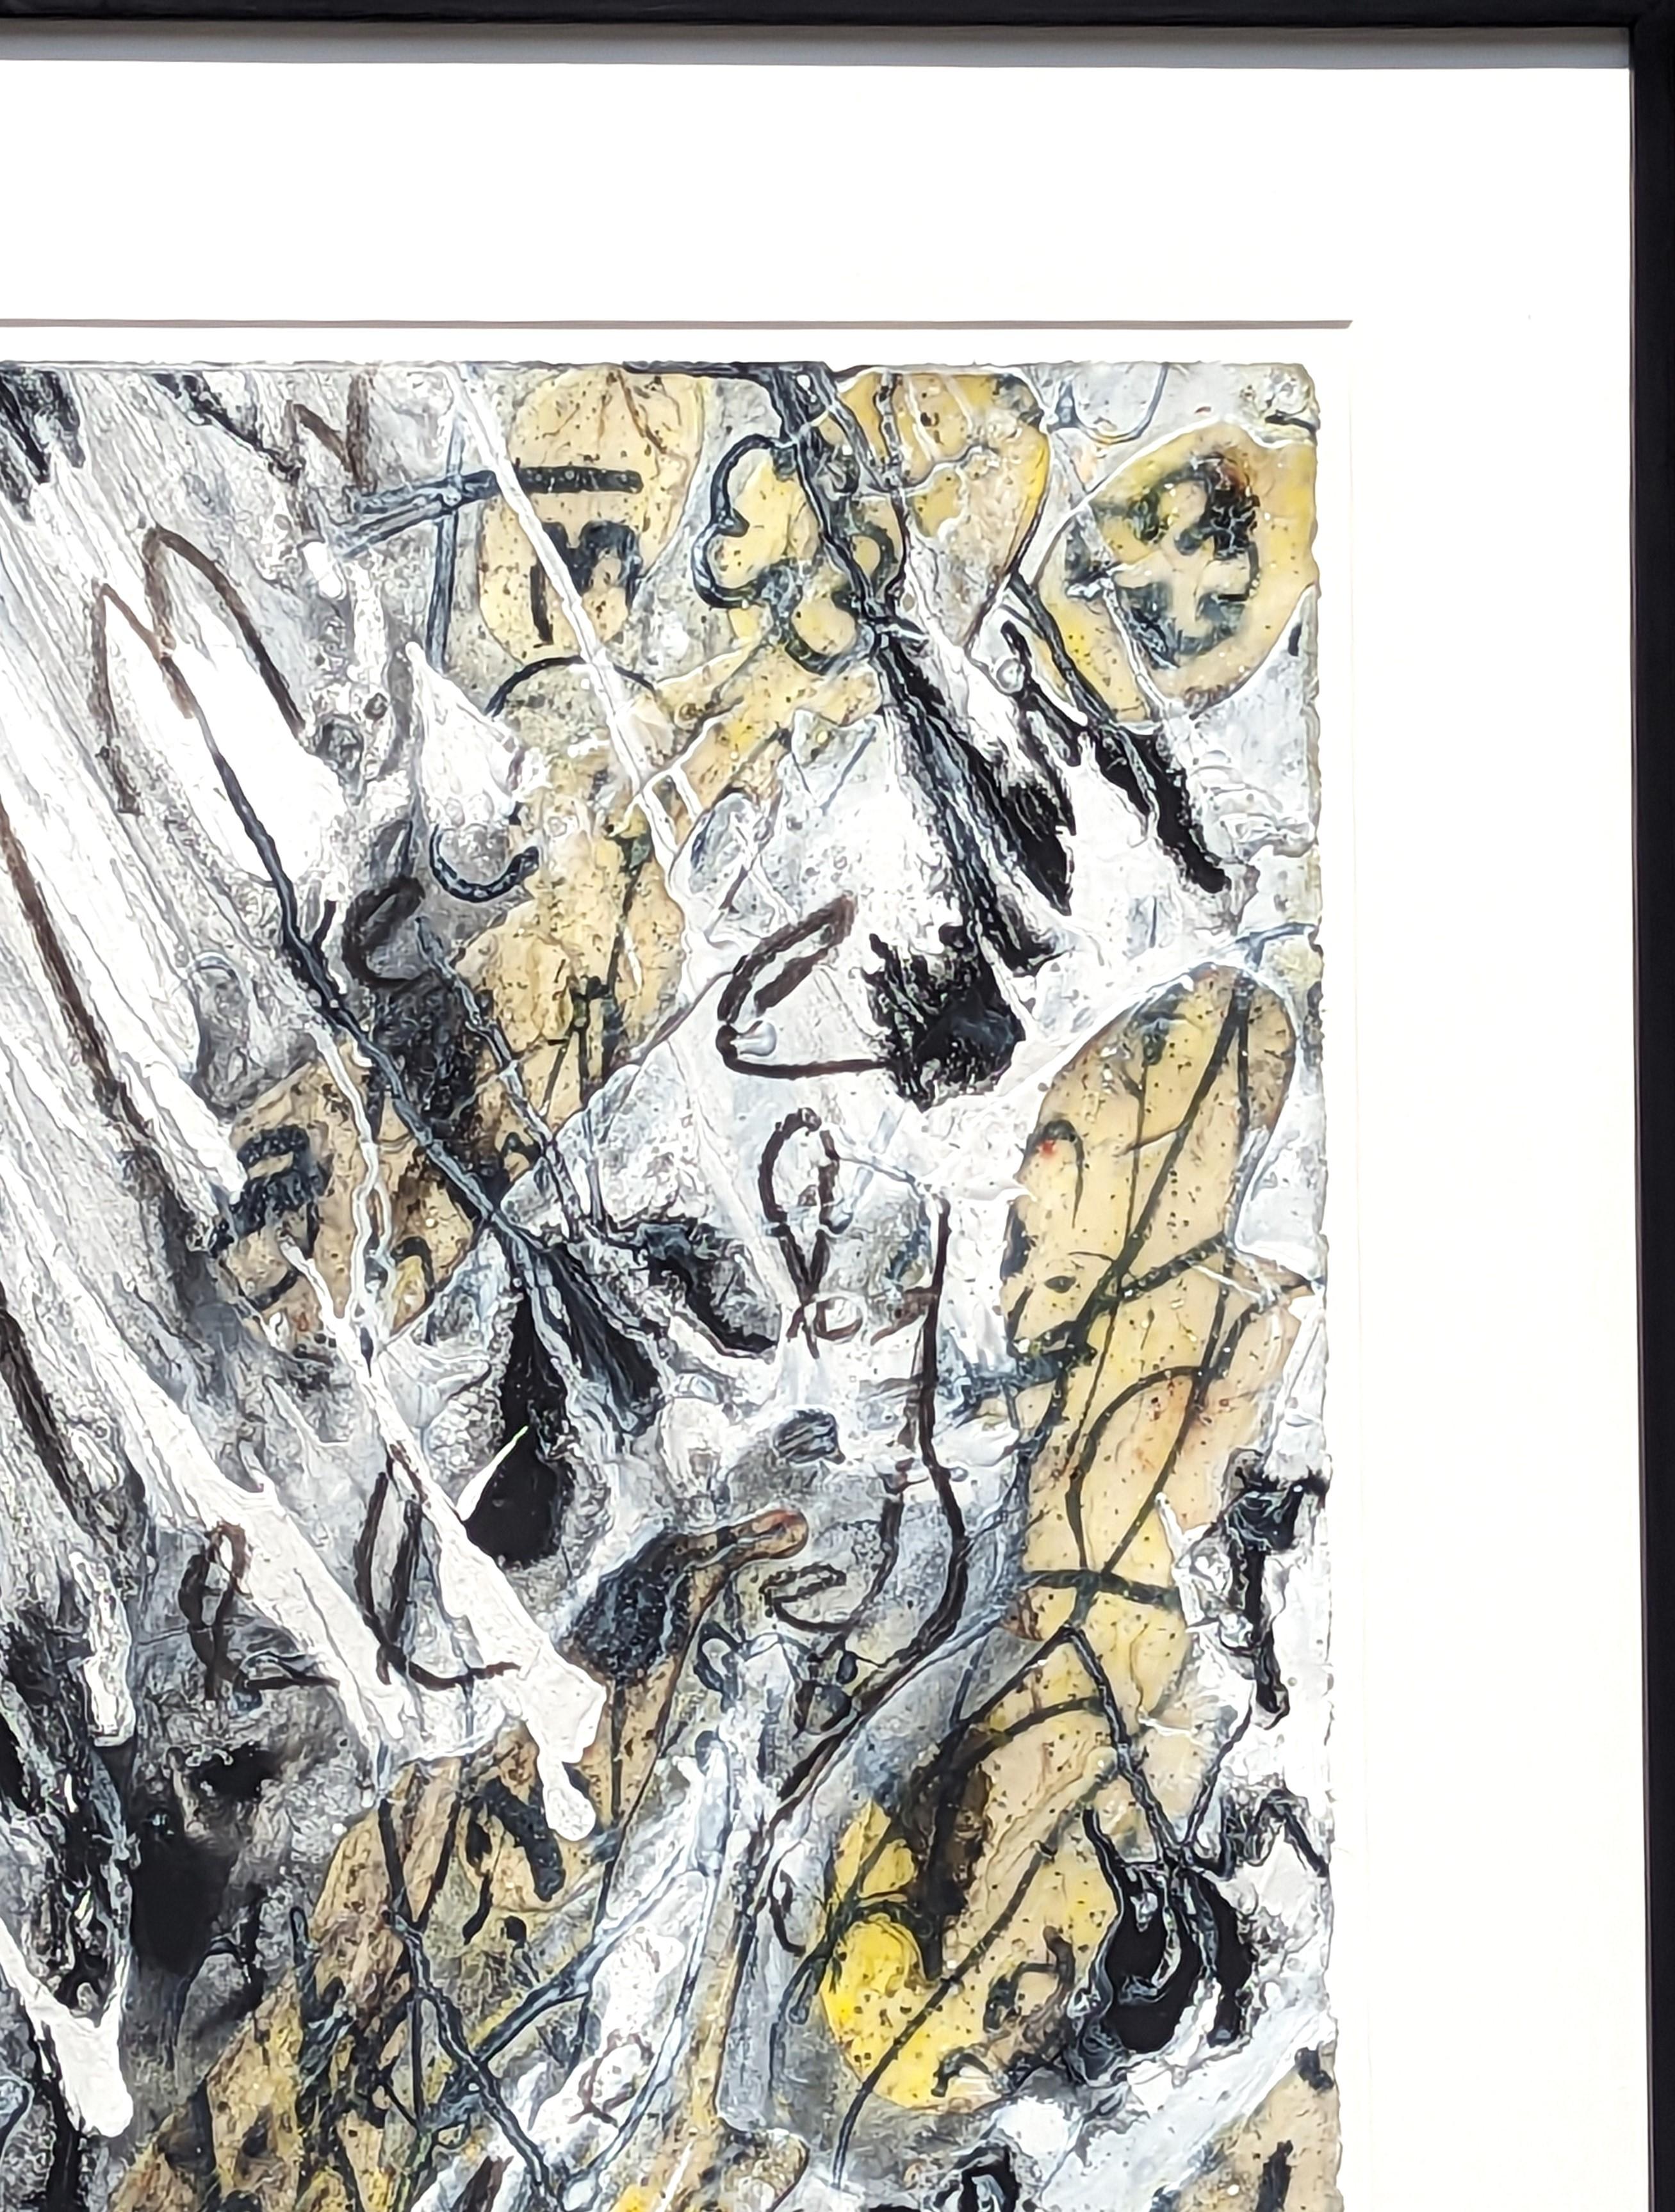 Zeitgenössische abstrakte expressionistische Mischtechniken der in Florida geborenen Künstlerin Suzanne McClelland. Das Werk zeichnet sich durch eine Explosion abstrakter und energiegeladener Markierungen aus, die vom unteren Mittelrand ausgehen.